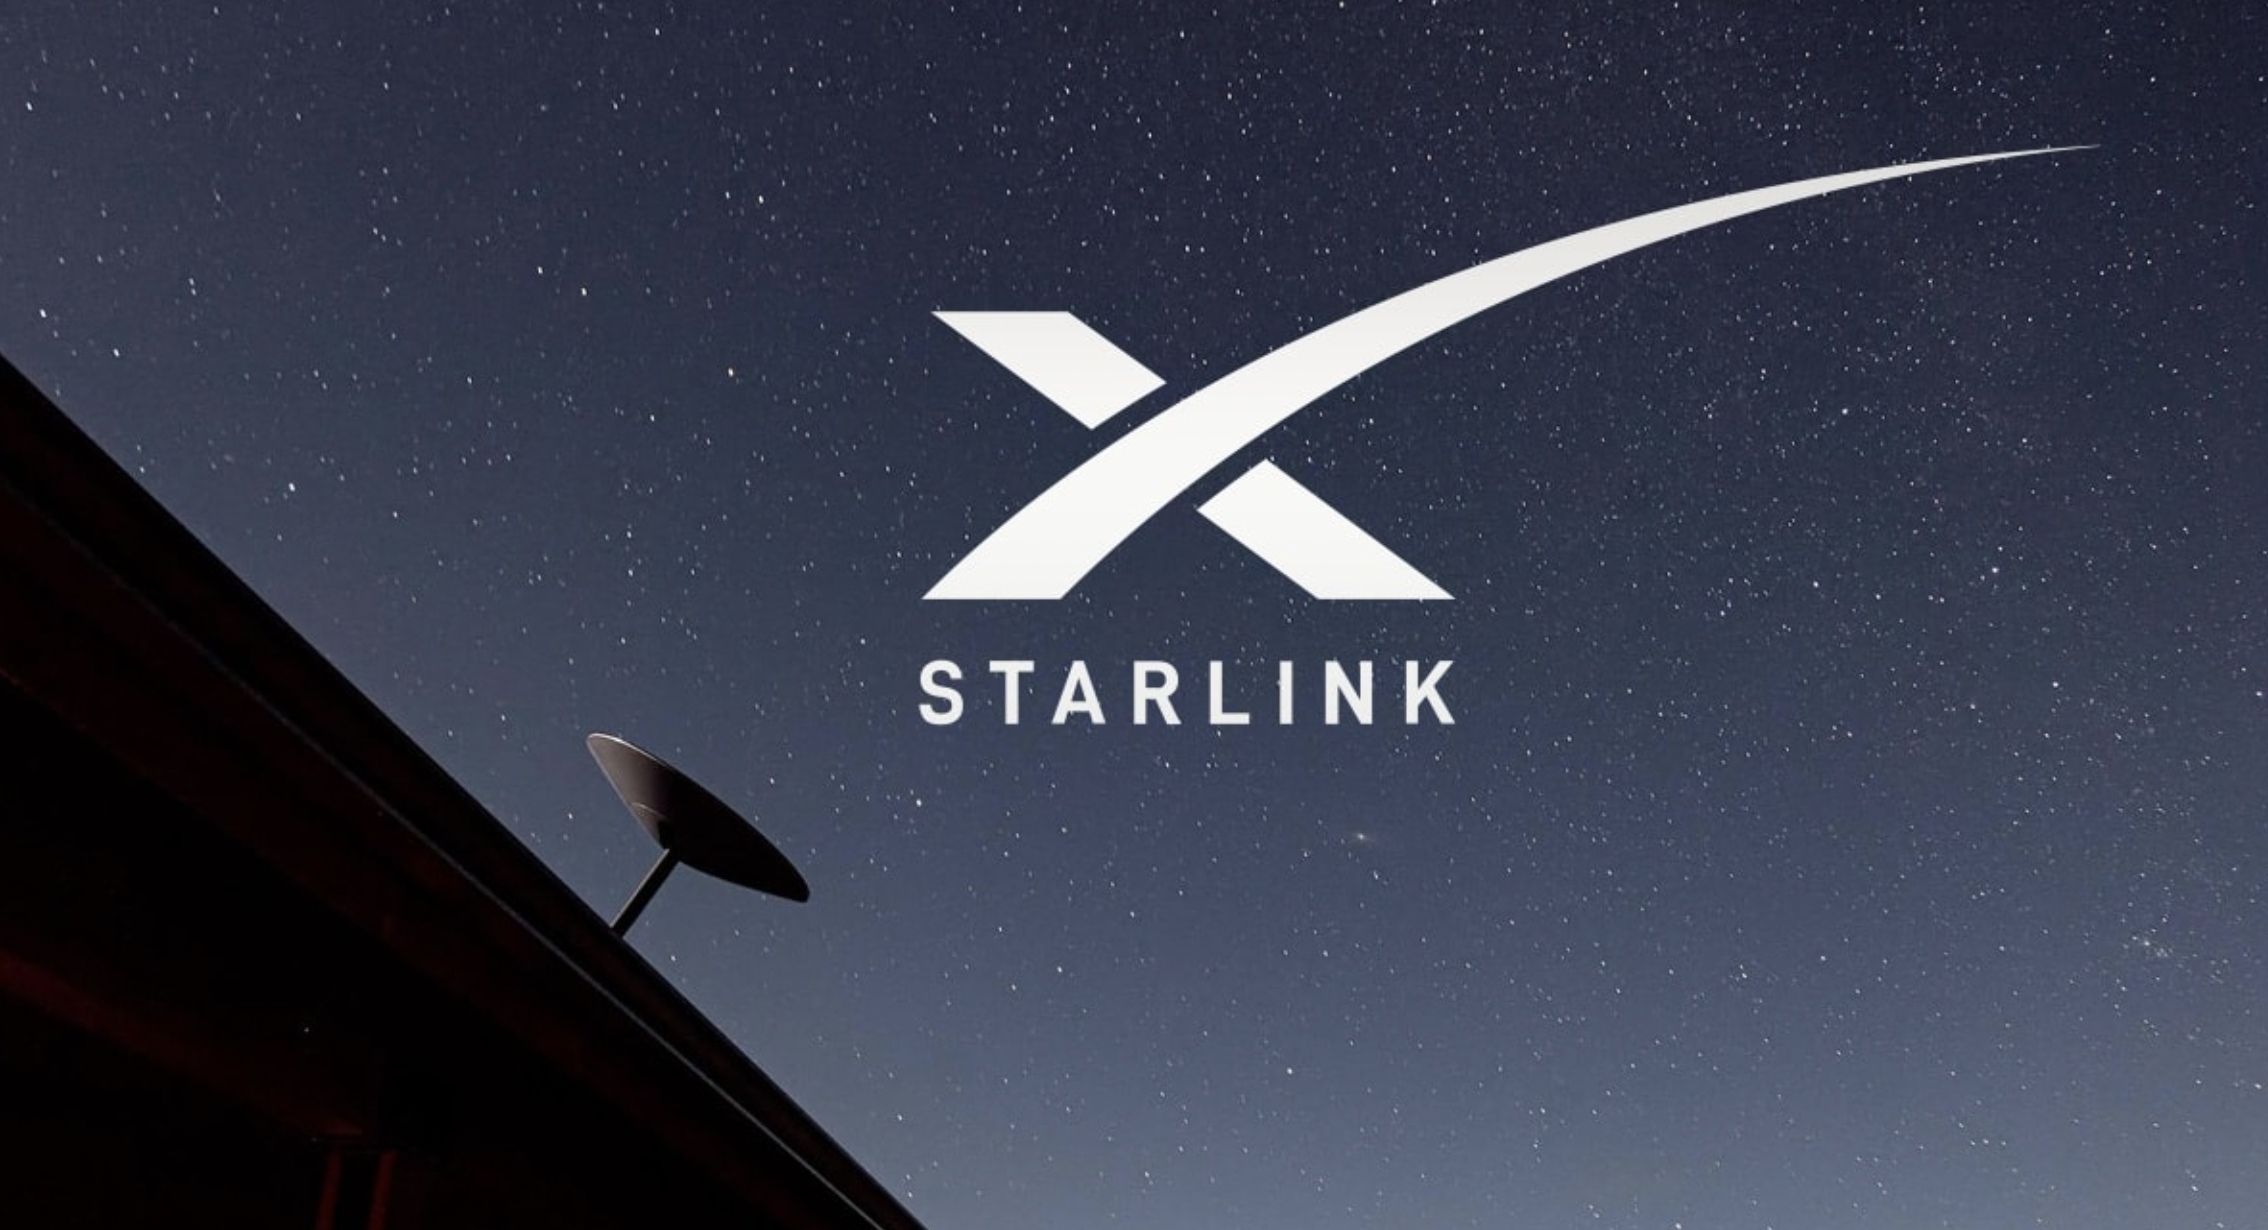 Die Starlink-Satelliten von Elon Musk erreichen weltweit 400.000 Abonnenten